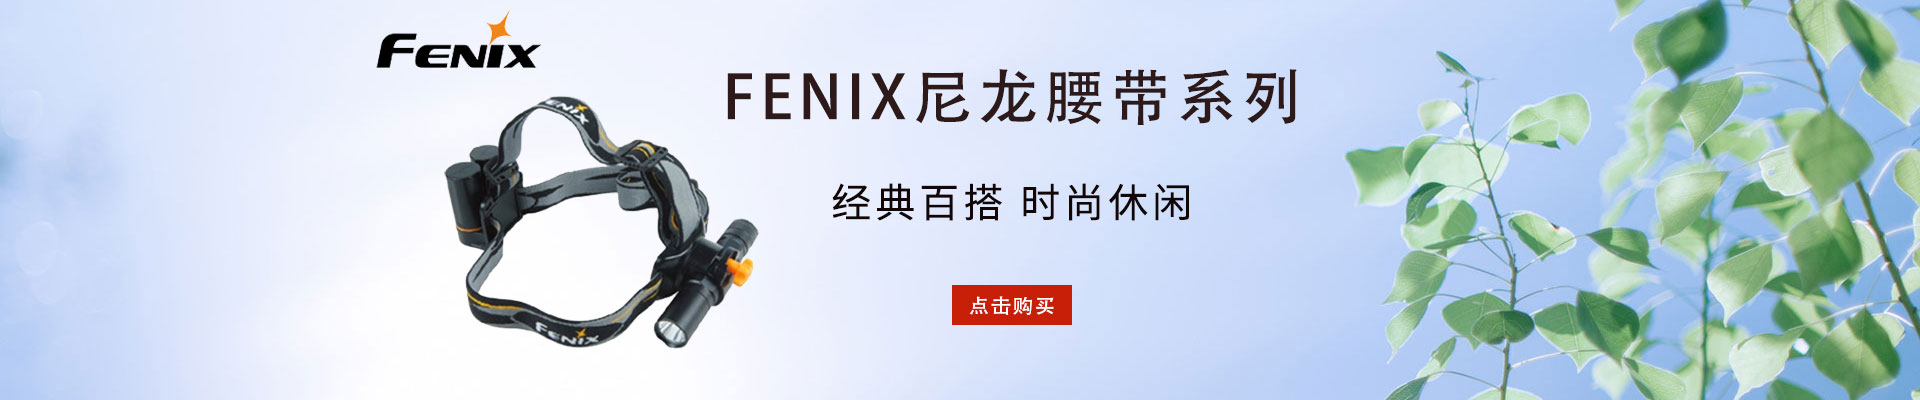 FENIX/朗恒|